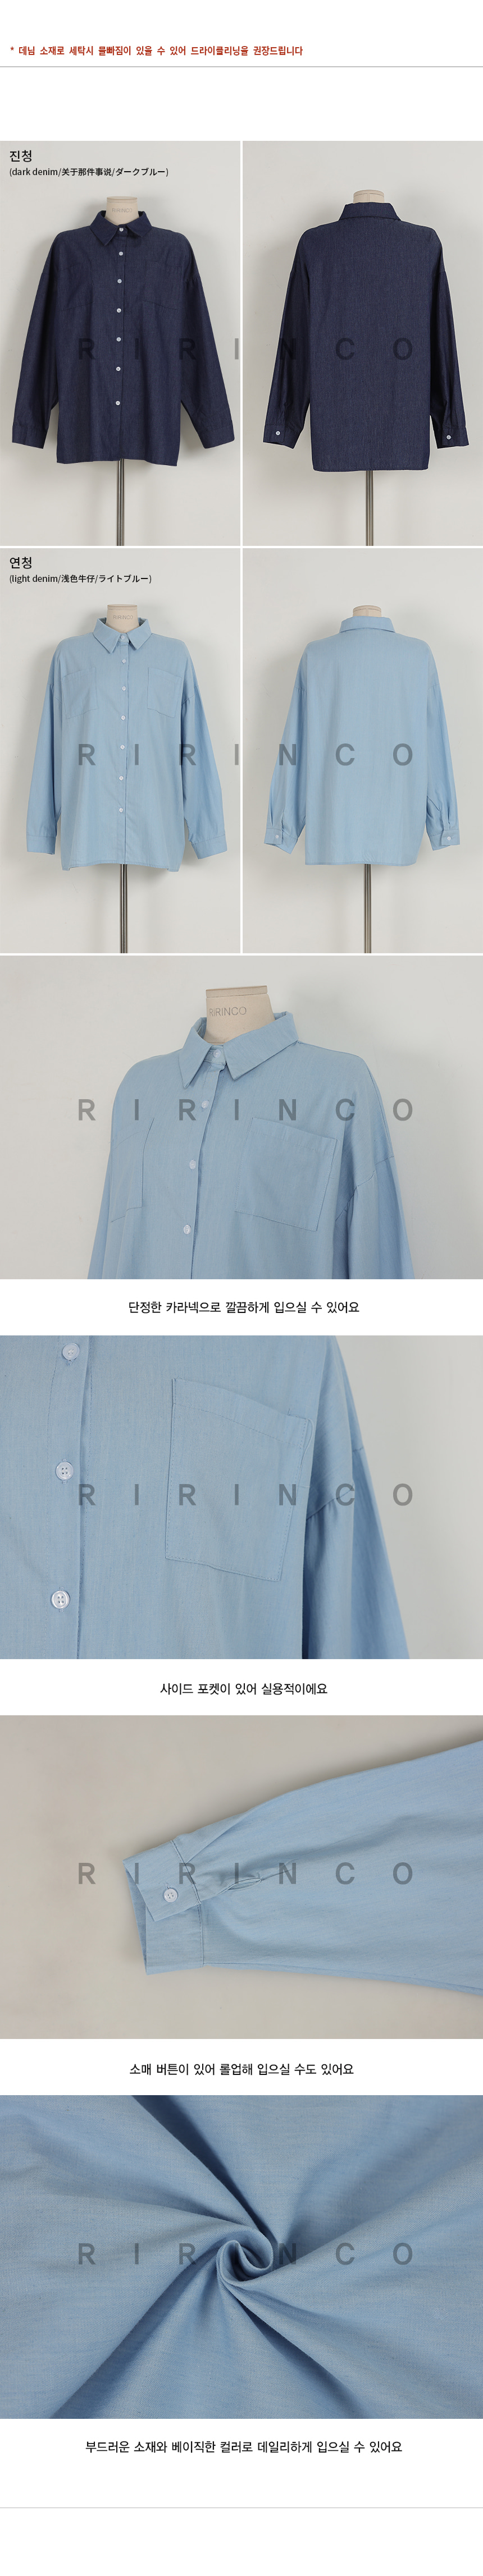 RIRINCO カジュアルデニムポケットシャツ